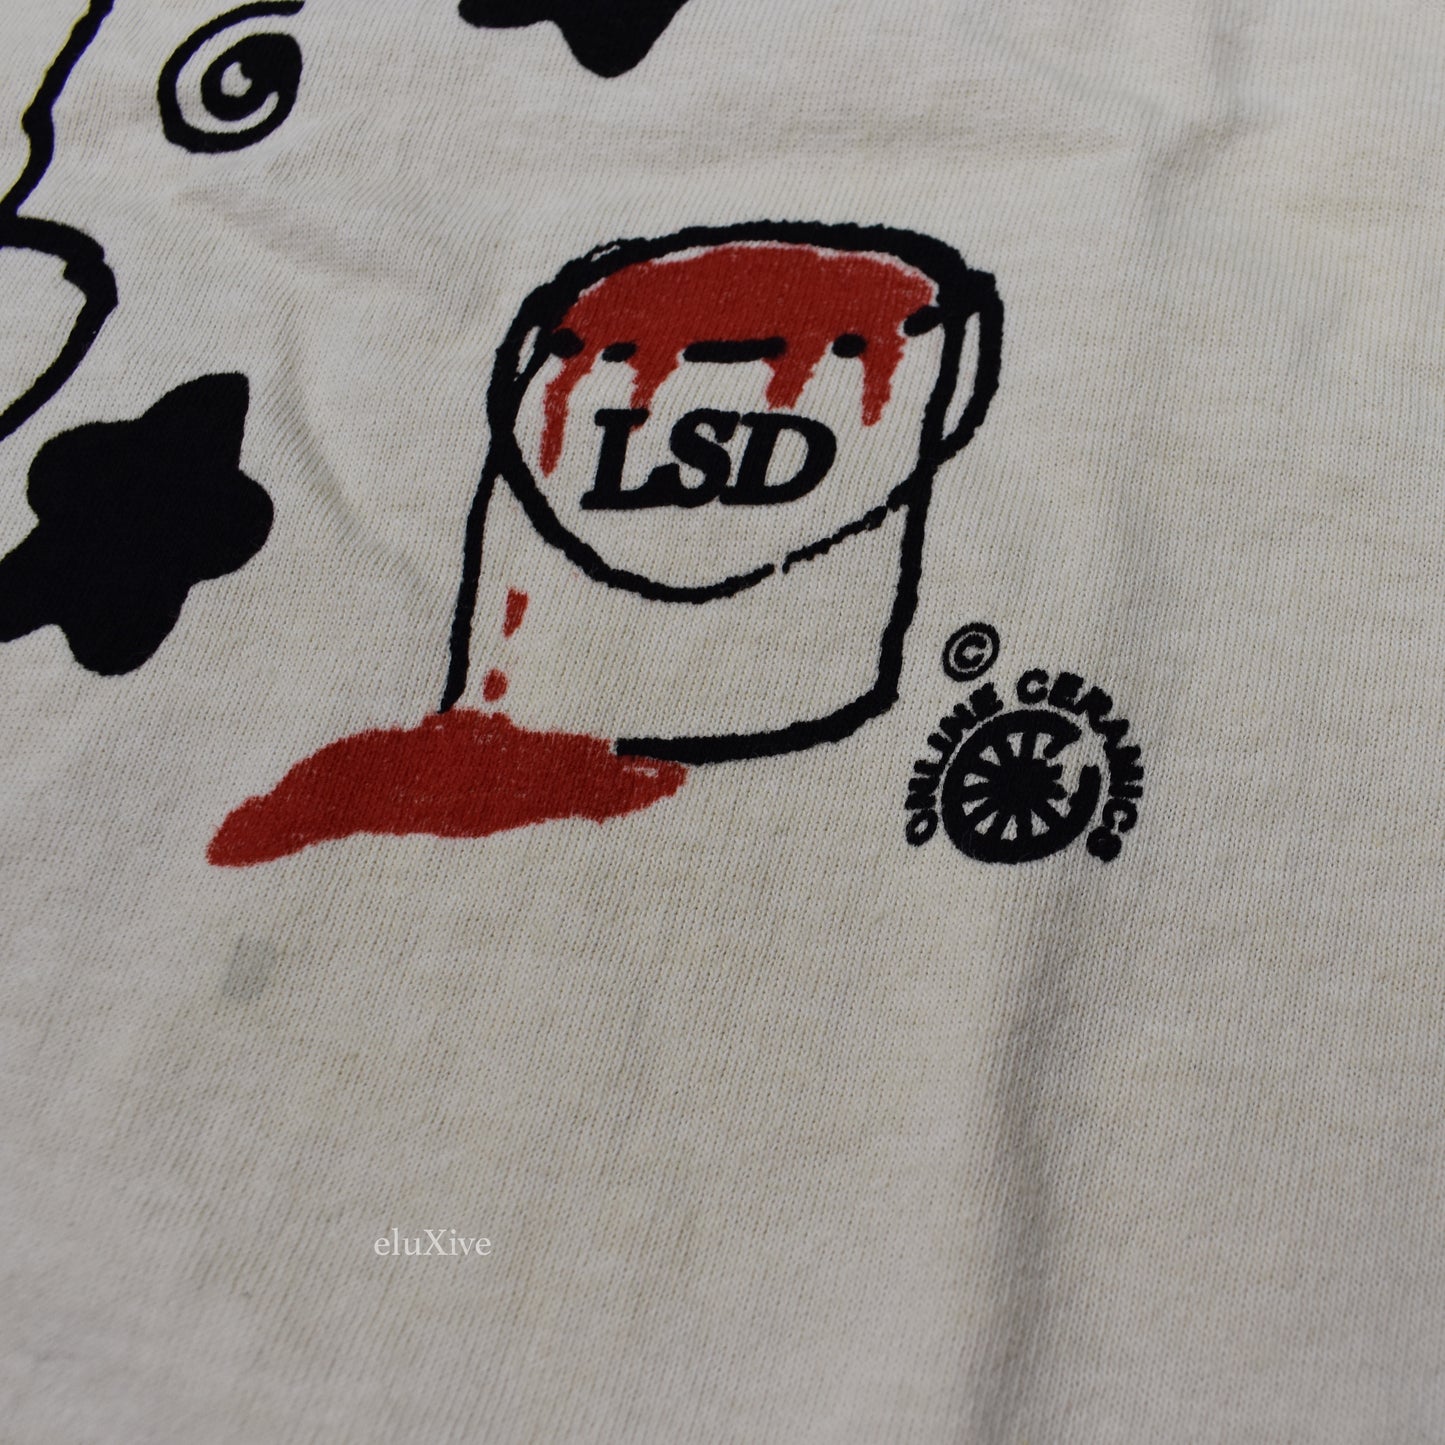 Online Ceramics - Beige LSD Bear Logo T-Shirt